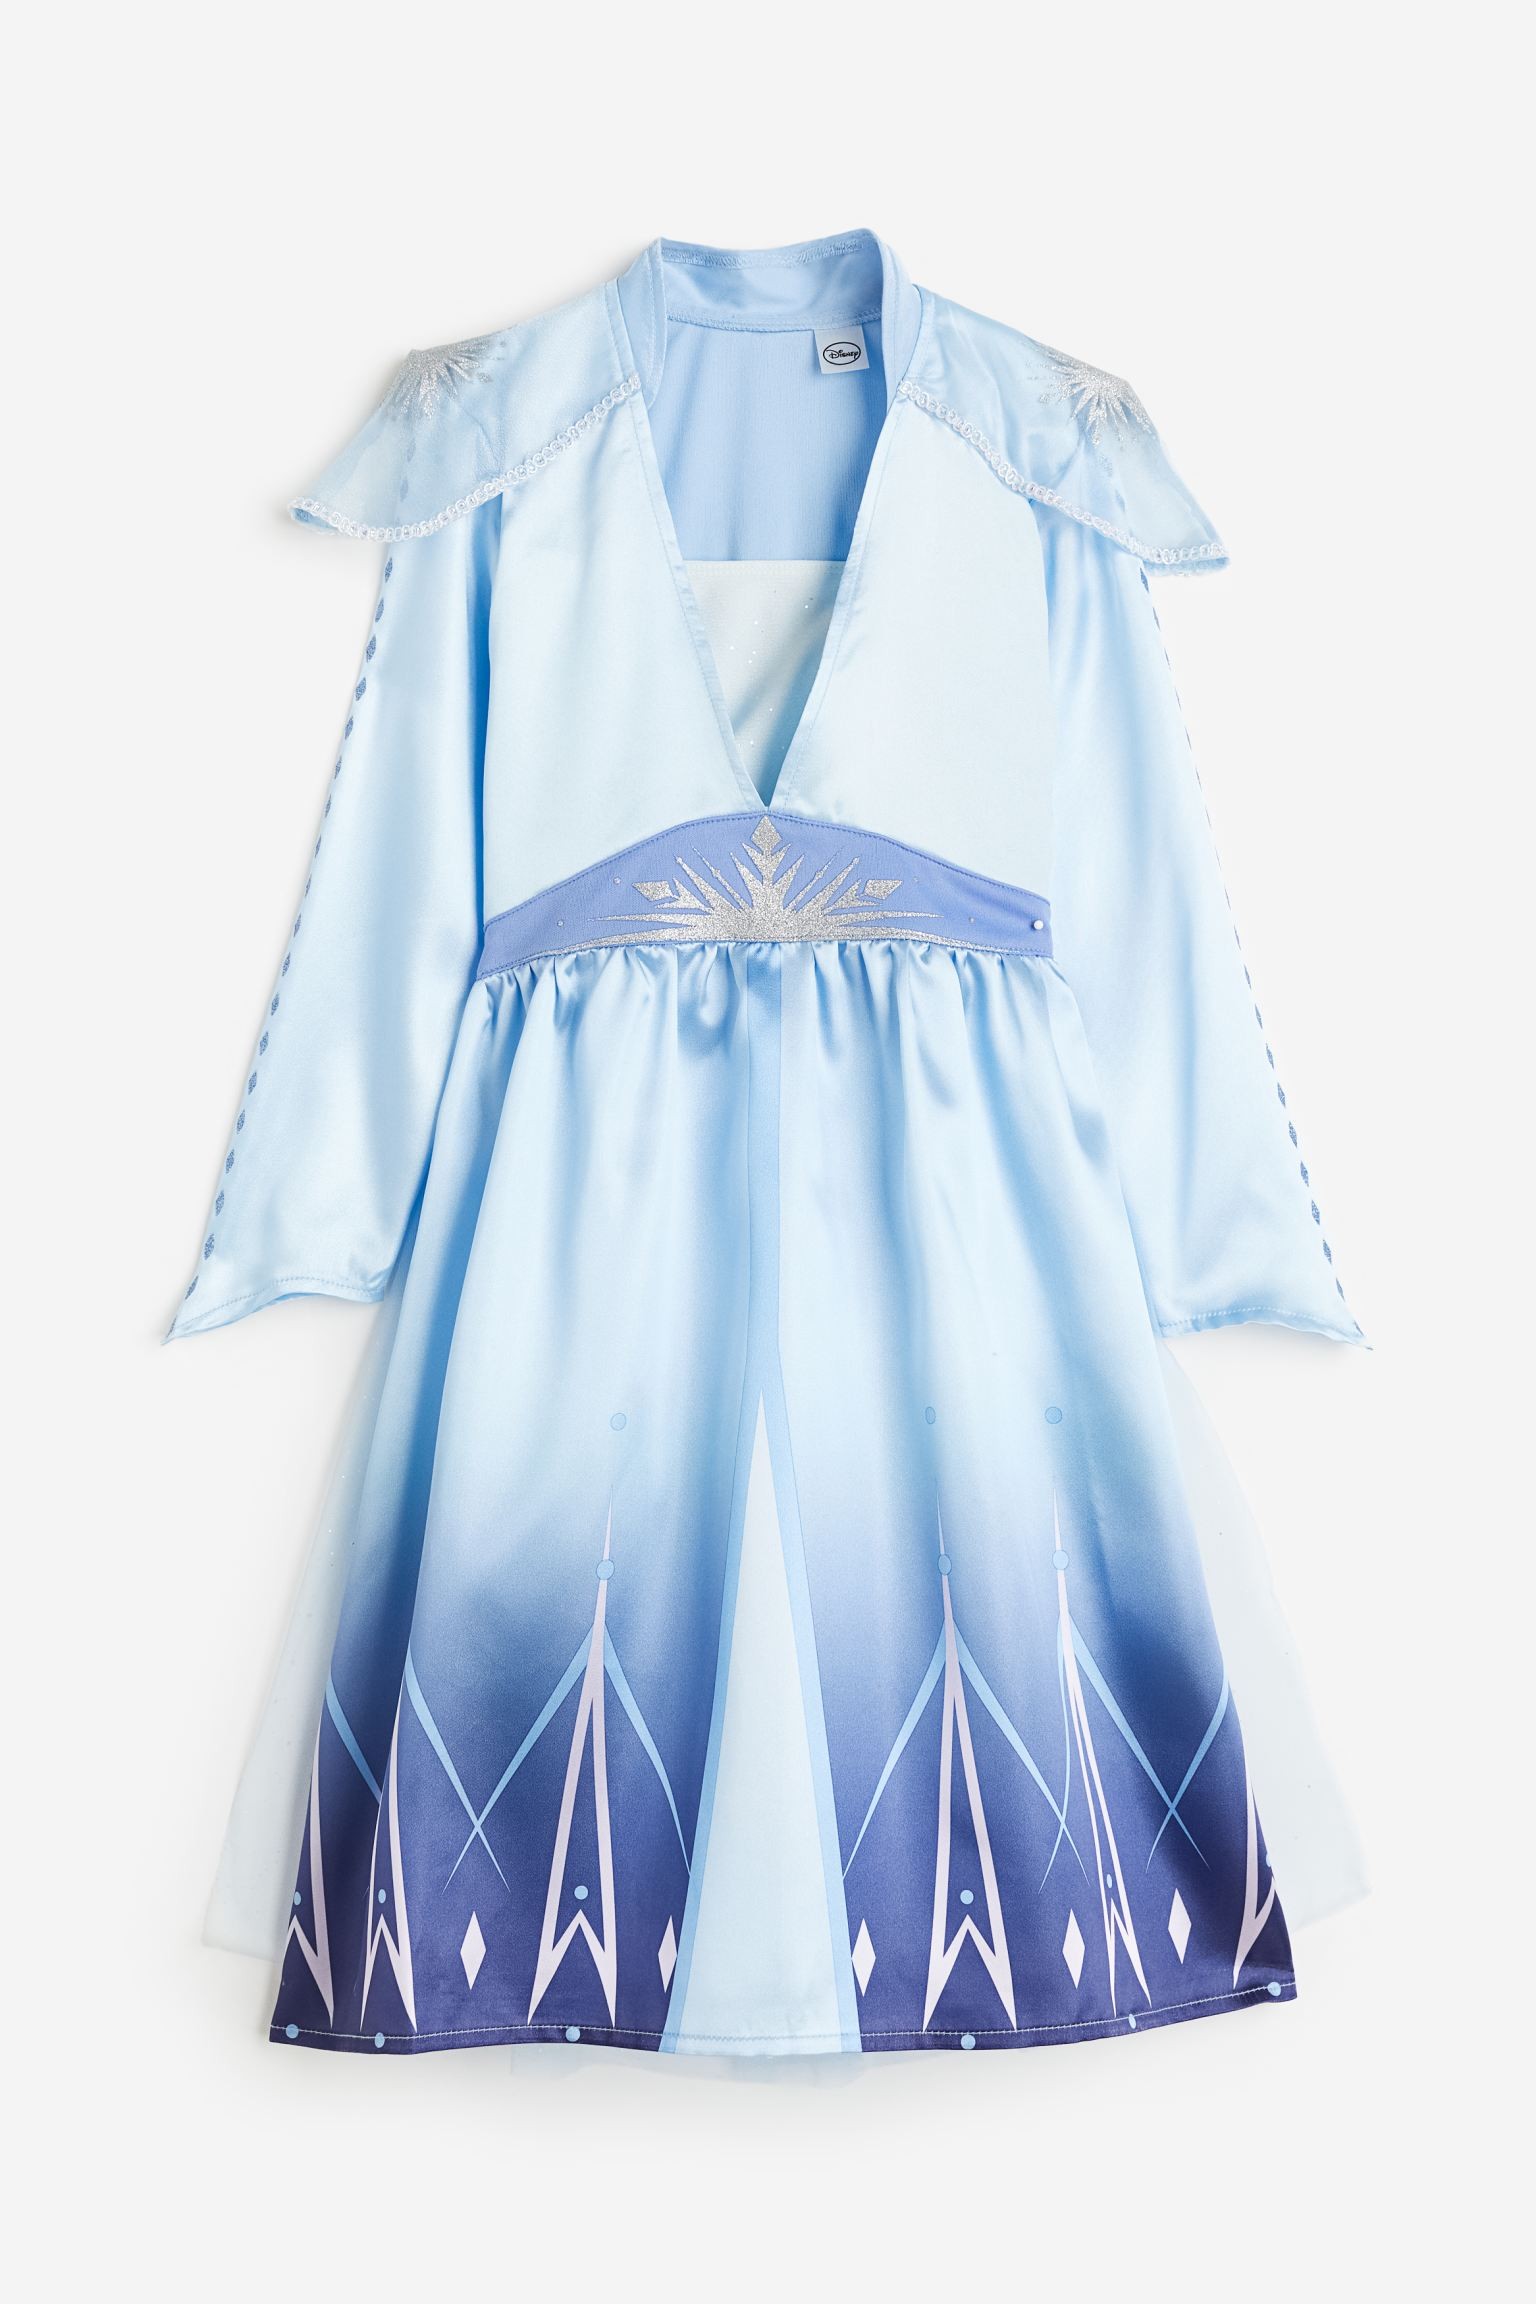 Маскарадный костюм, Голубой/Замороженный, Разные размеры